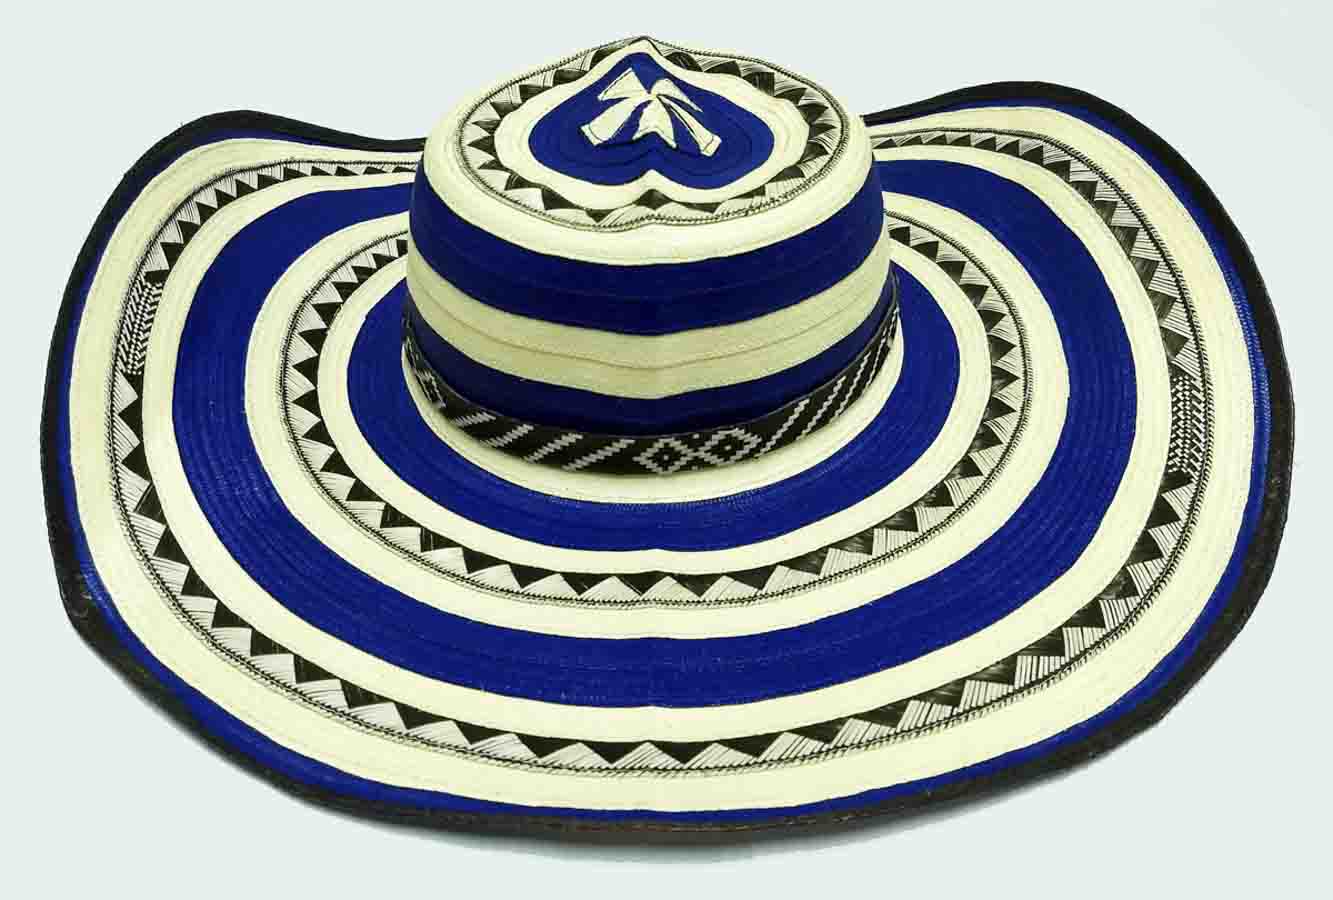 https://www.productosdecolombia.com/micrositios/sombreros-colombianos-hats/sombrero-21-azulg.JPG